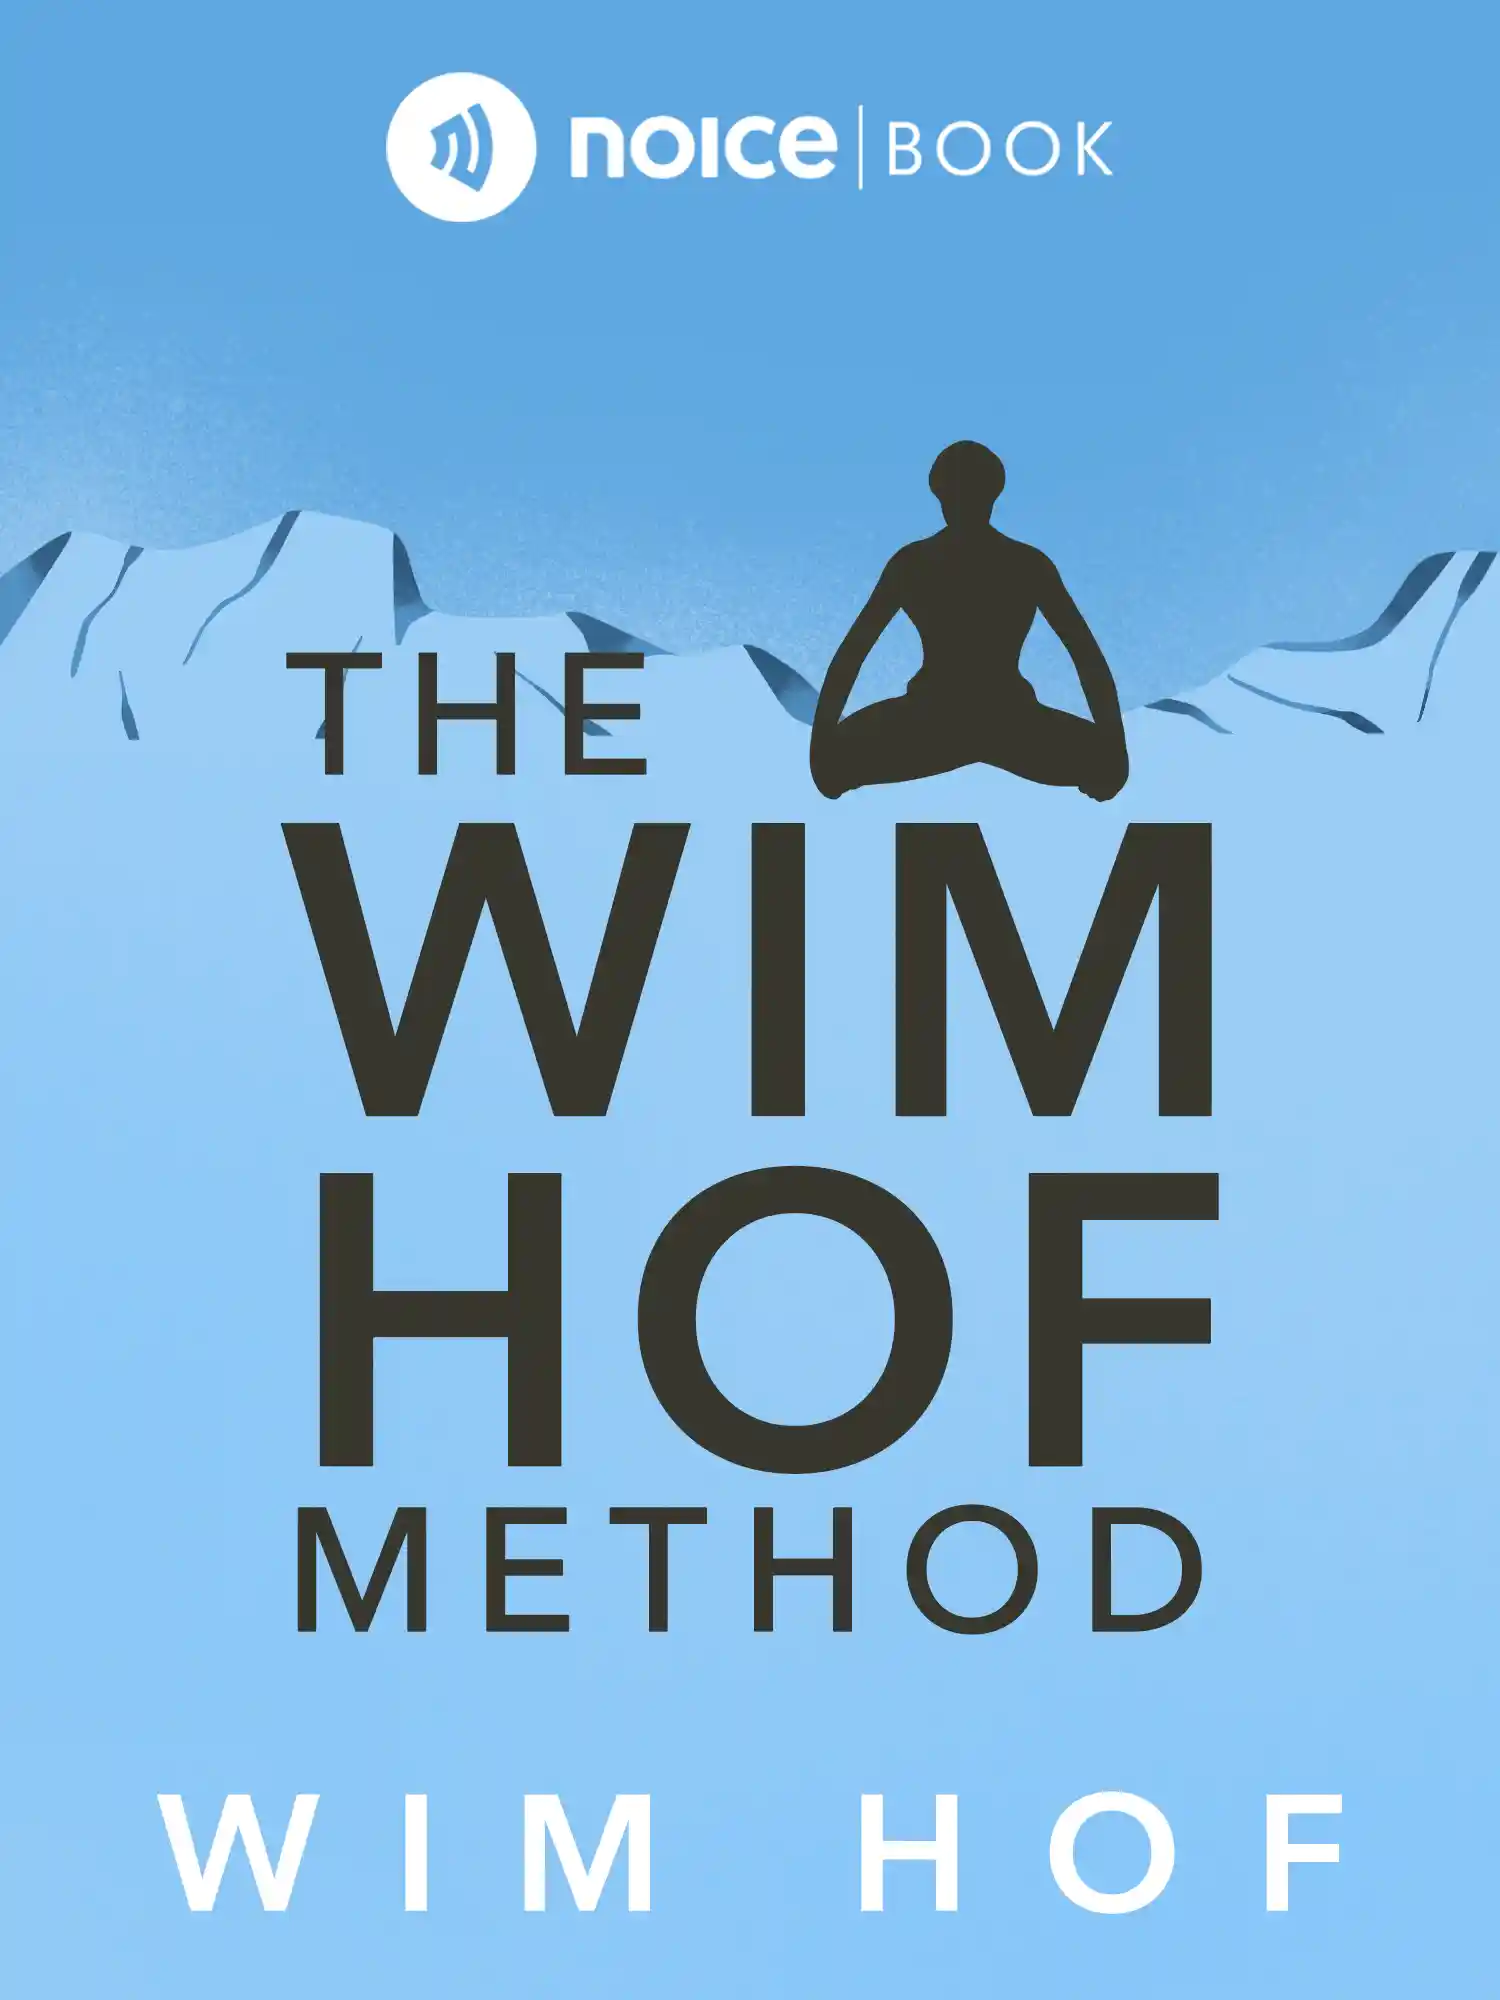 #8 Testimoni metode Wim Hof.